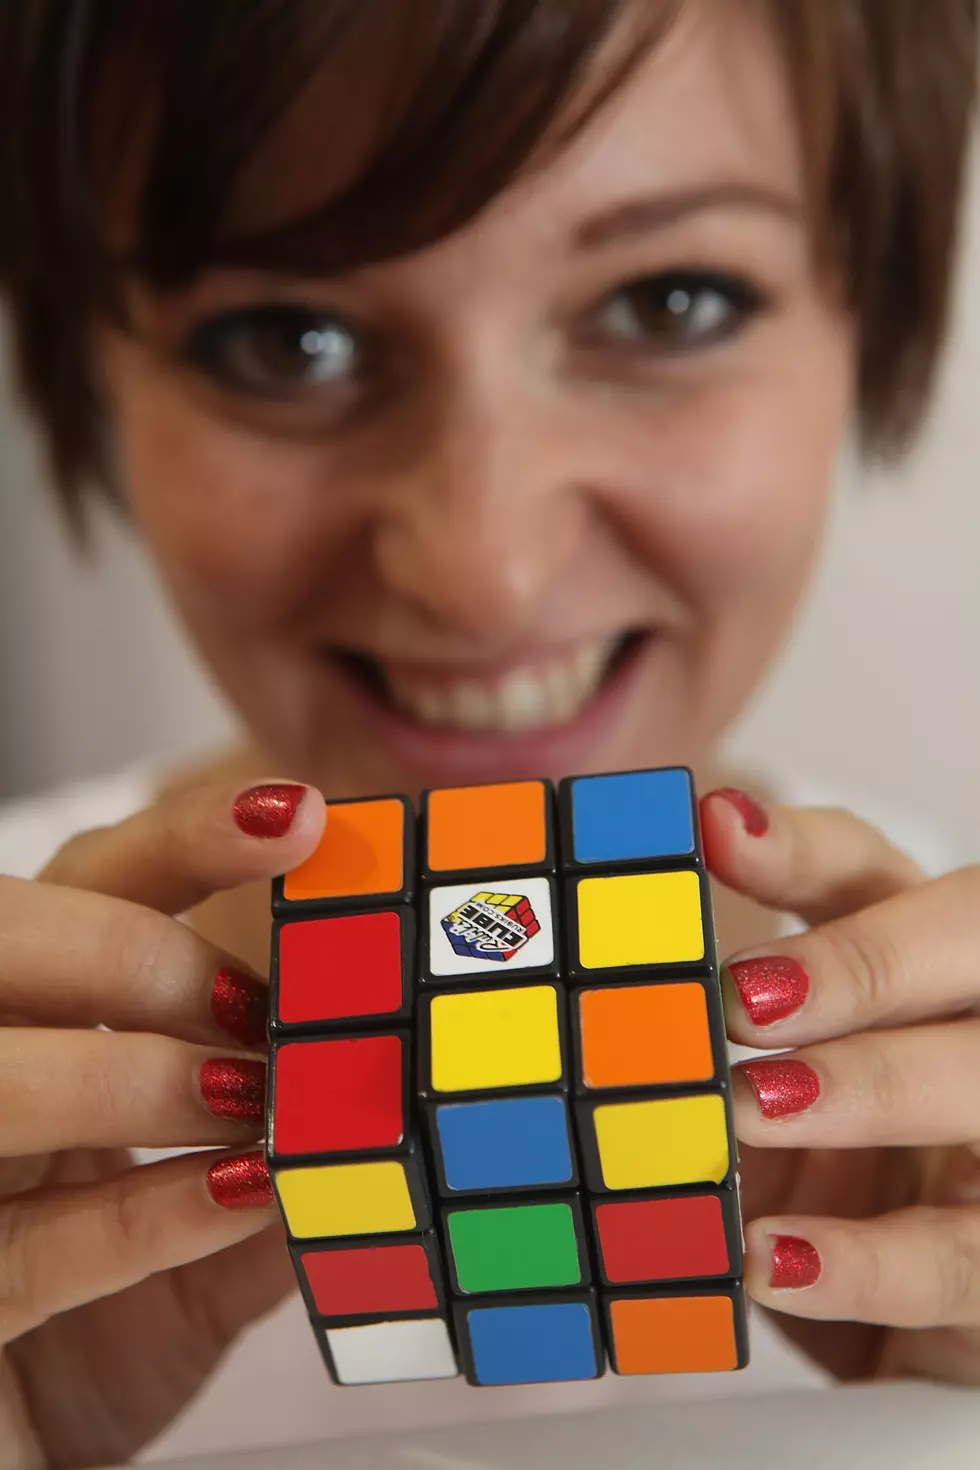 Rubiks Cube Hottie [VIDEO]